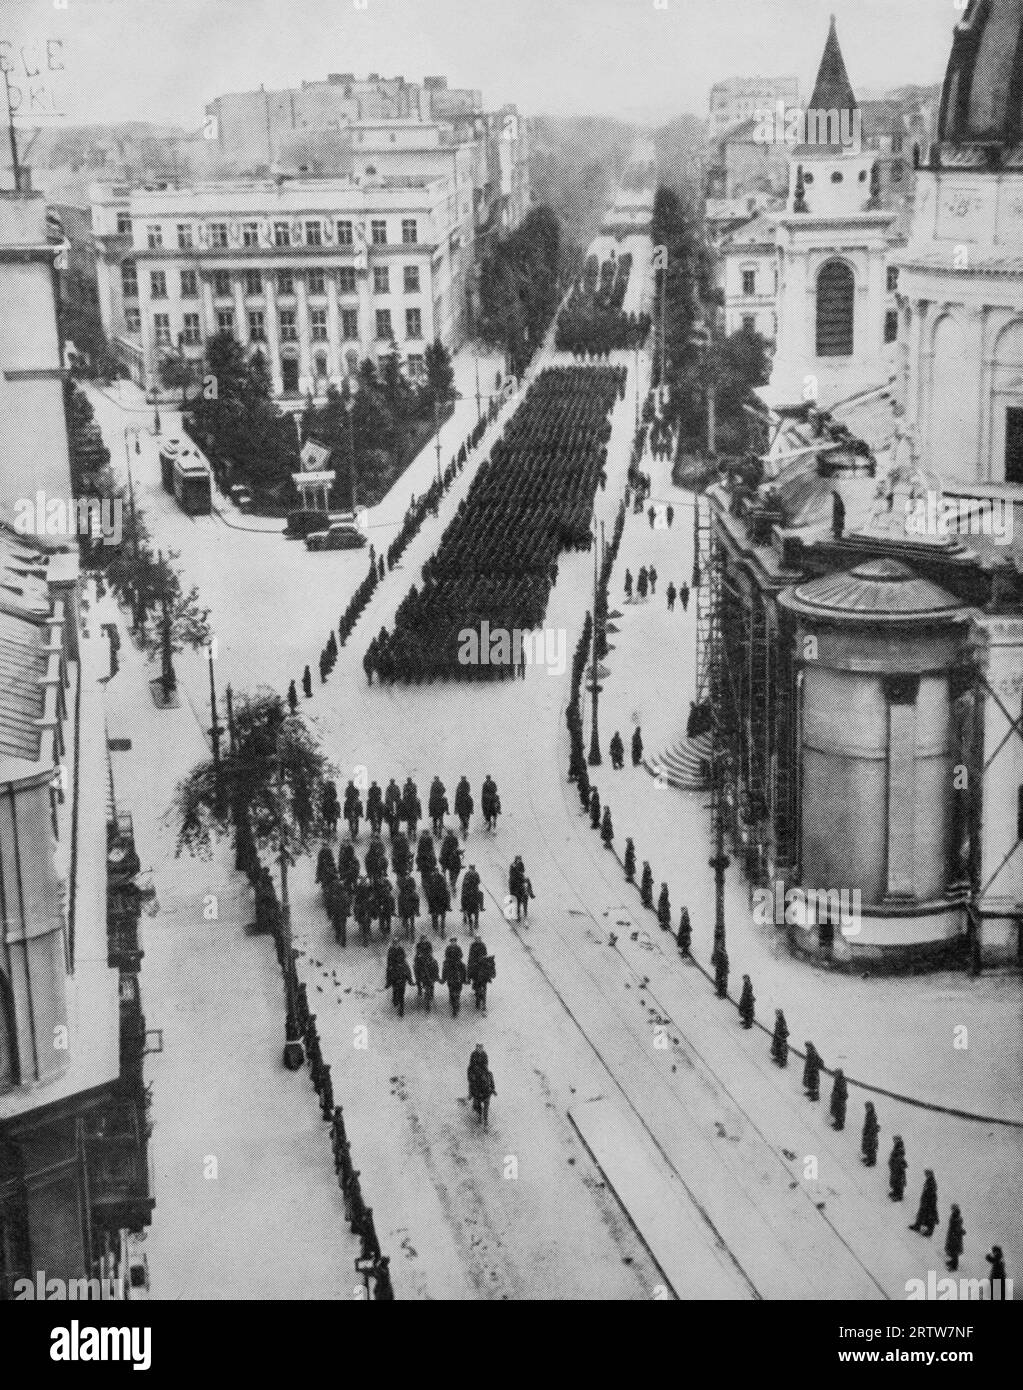 Nach der Invasion Polens flog Adolf Hitler am 5. Oktober 1939 nach Warschau, um bei einem vormarsch seiner siegreichen Armee den Gruß zu nehmen. Obwohl Truppen die Straßen säumten, um die Massen in Schach zu halten, blieb die lokale Bevölkerung drinnen, daher die leeren Straßen. Stockfoto